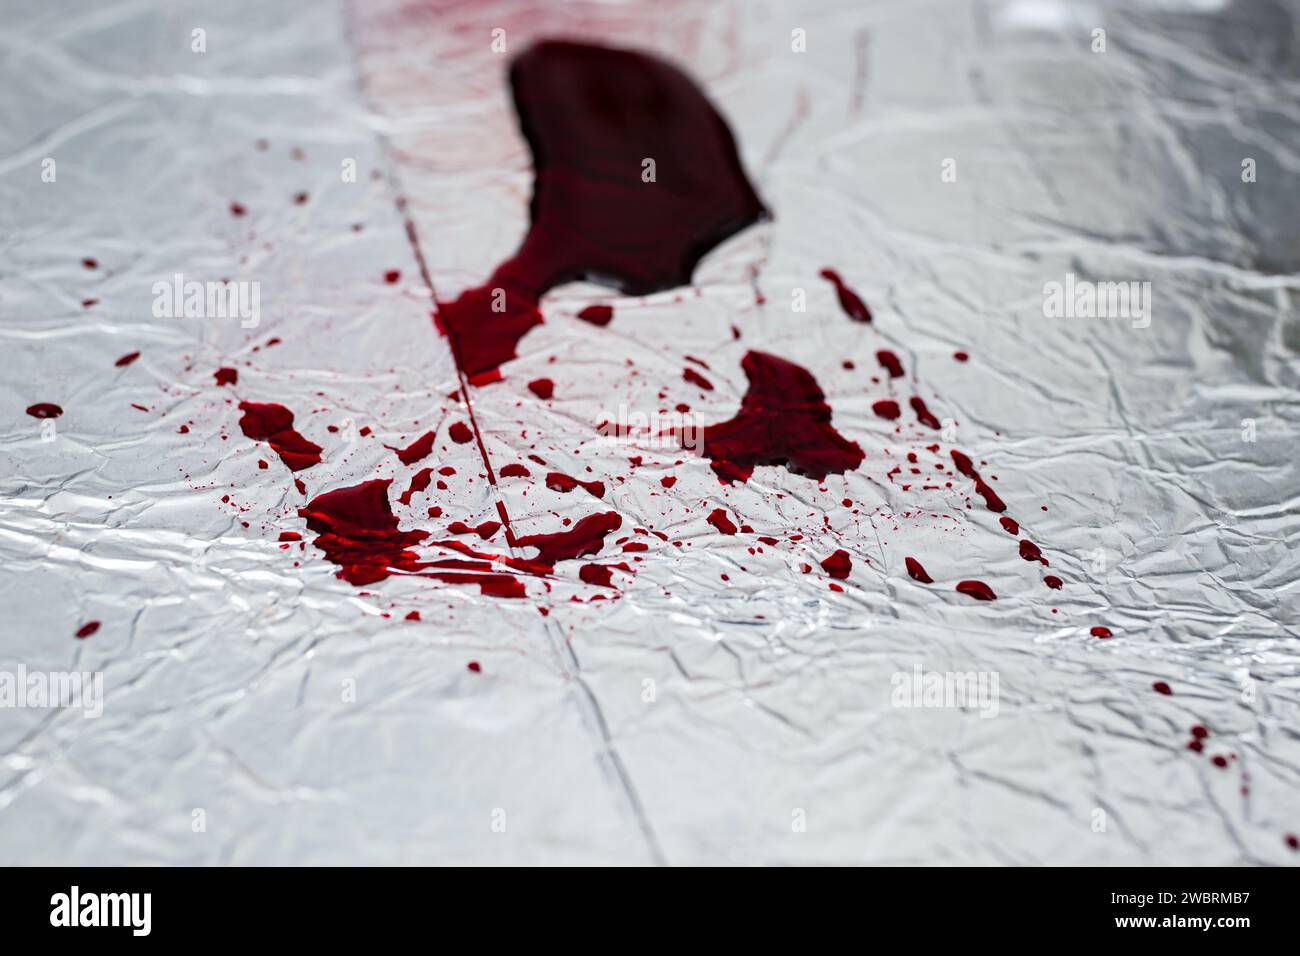 Rote Blutspritzer auf silberner Stahloberfläche, Weichzeichner, abstrakter Hintergrund Stockfoto